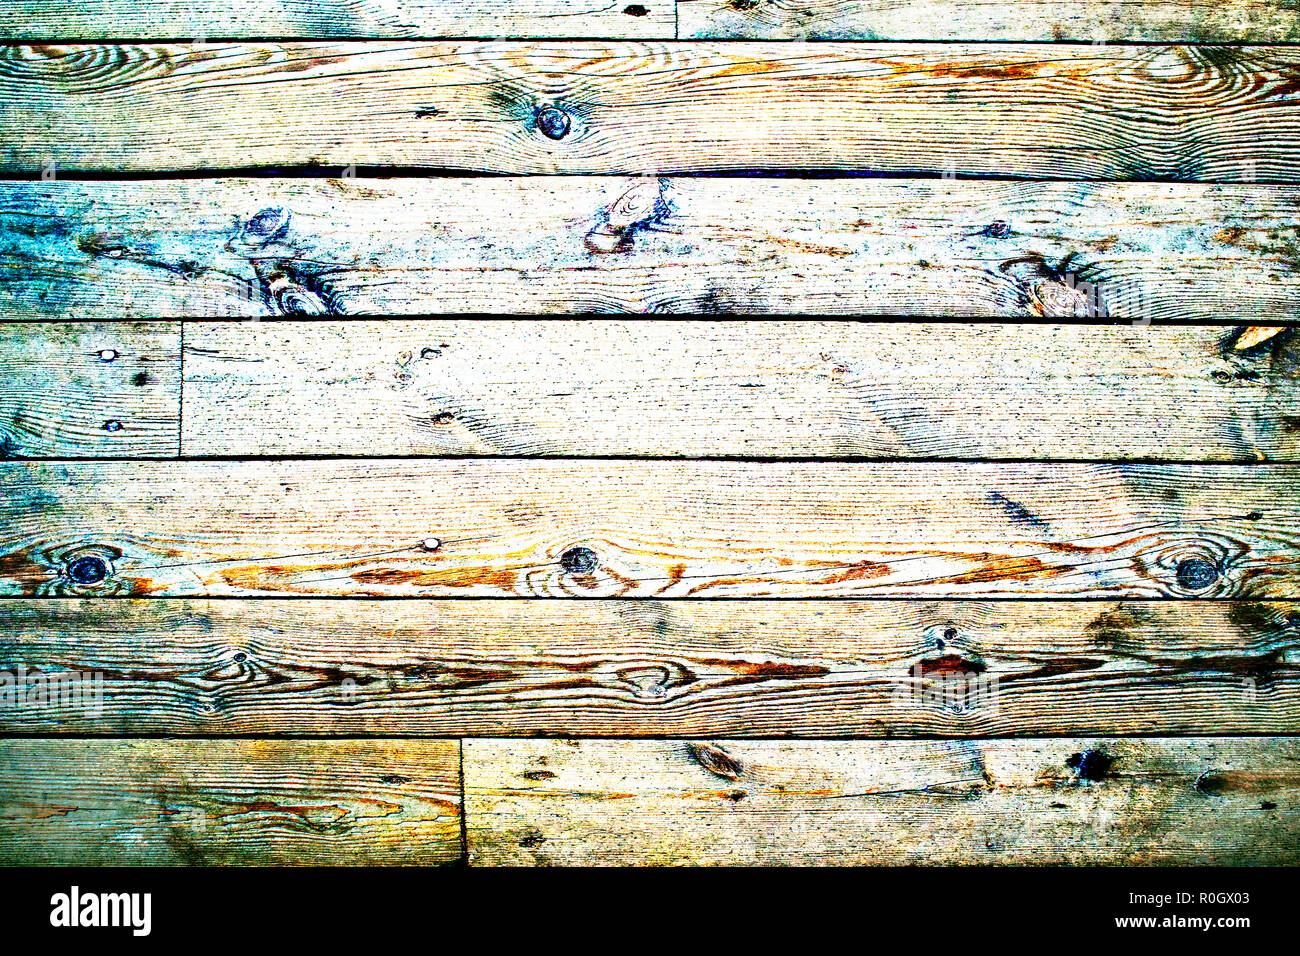 La Moda multicolor de alto contraste de fondo o textura de madera, tonificación de imagen HDR Foto de stock